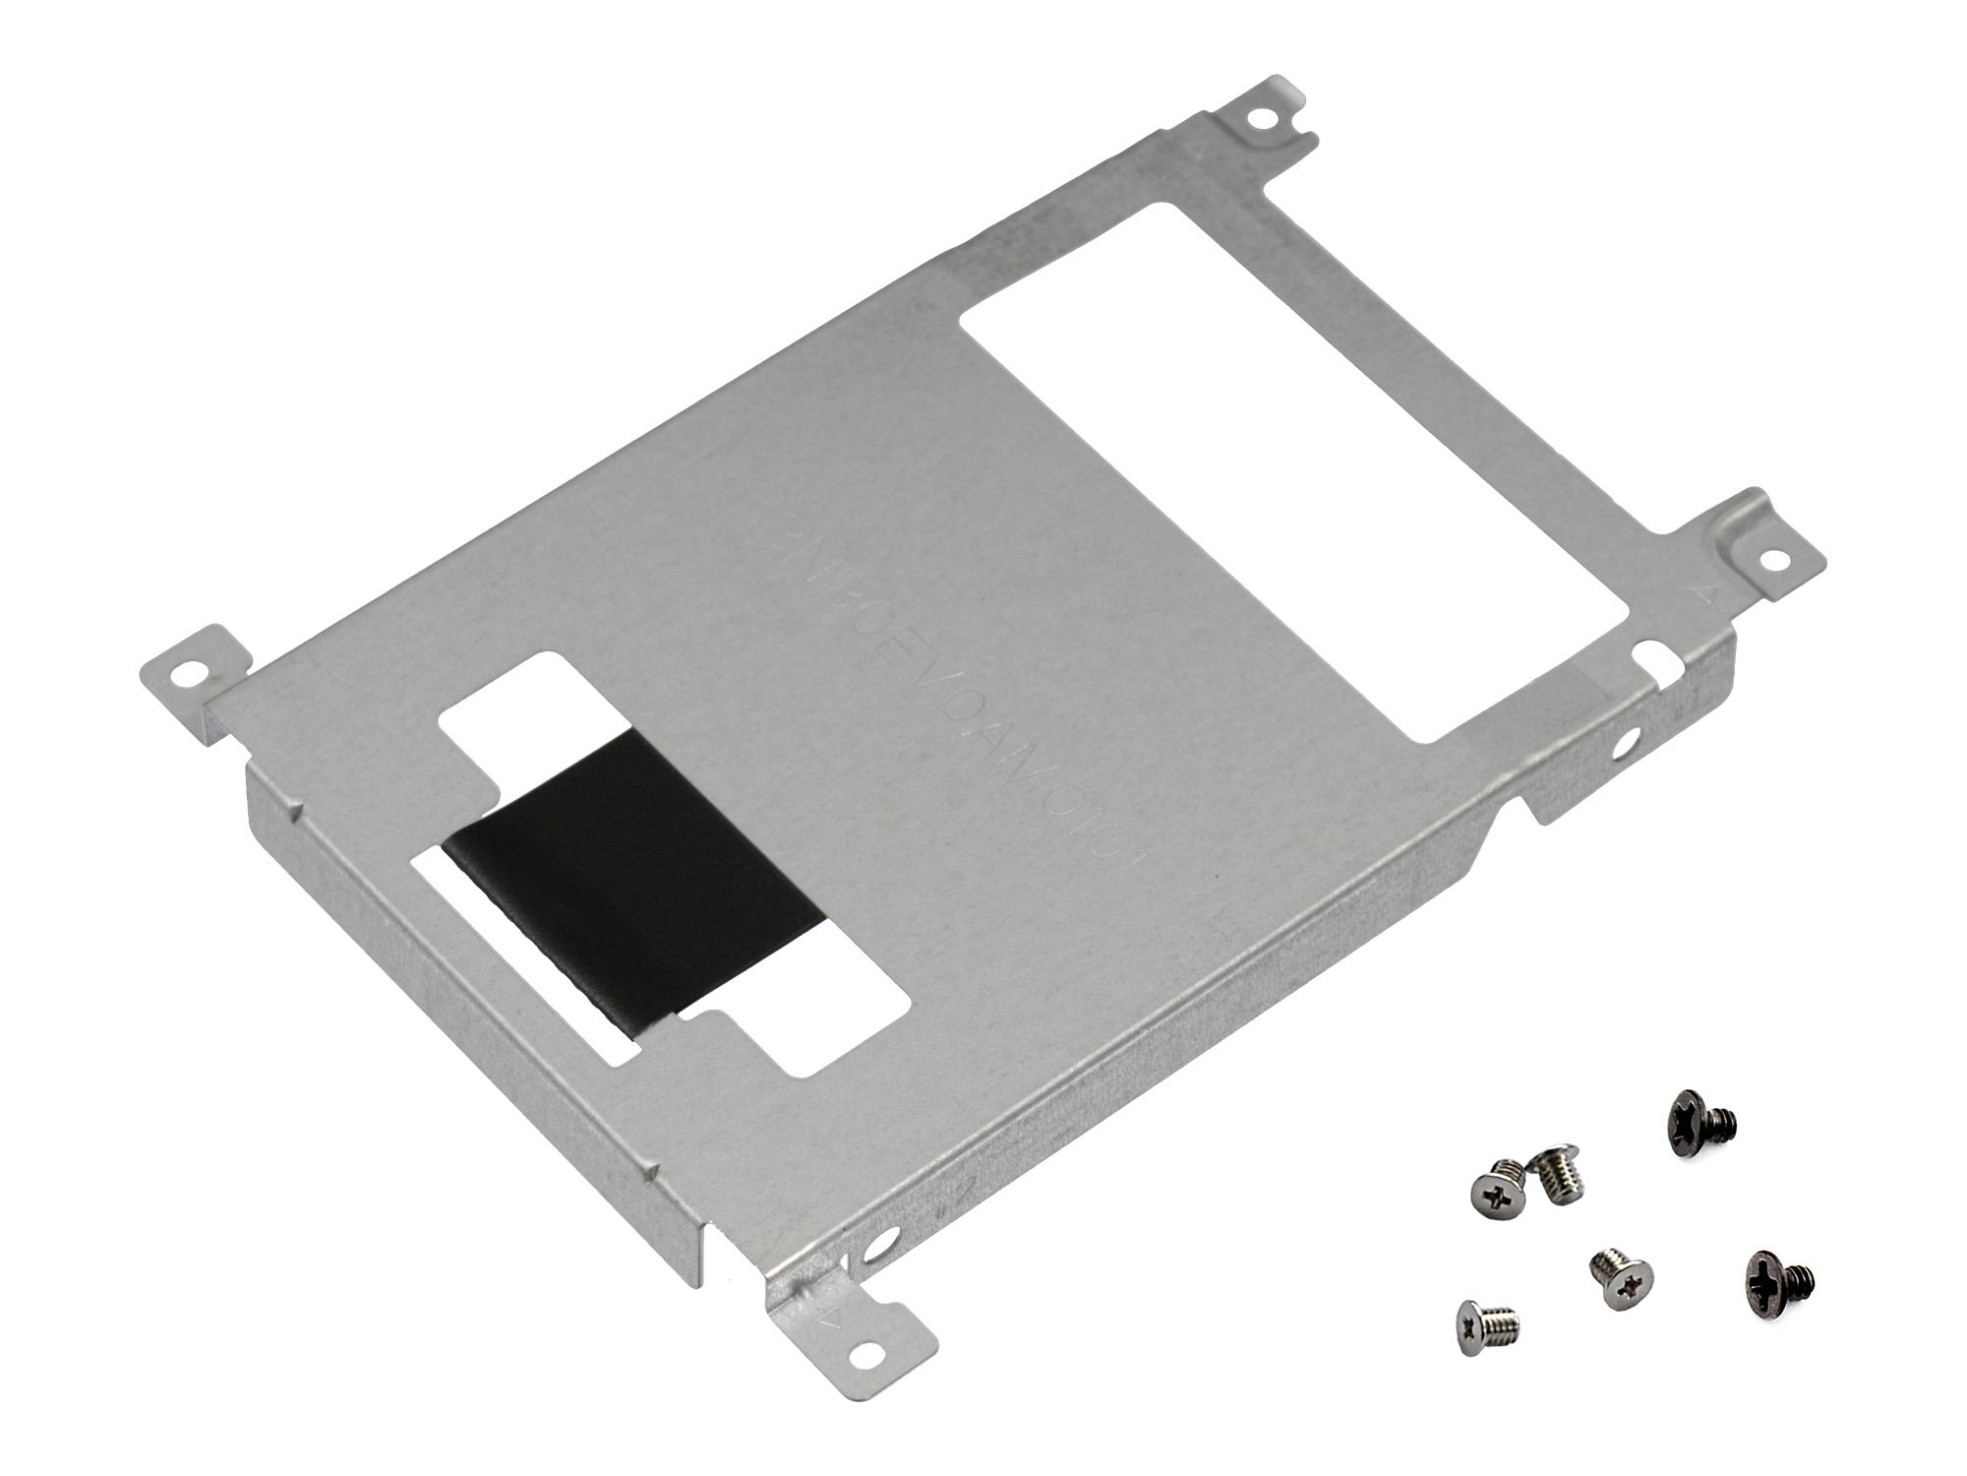 Festplatten-Einbaurahmen für den 1. Festplatten Schacht inkl. Schrauben Original für Asus VivoBook Pro 17 N705UQ